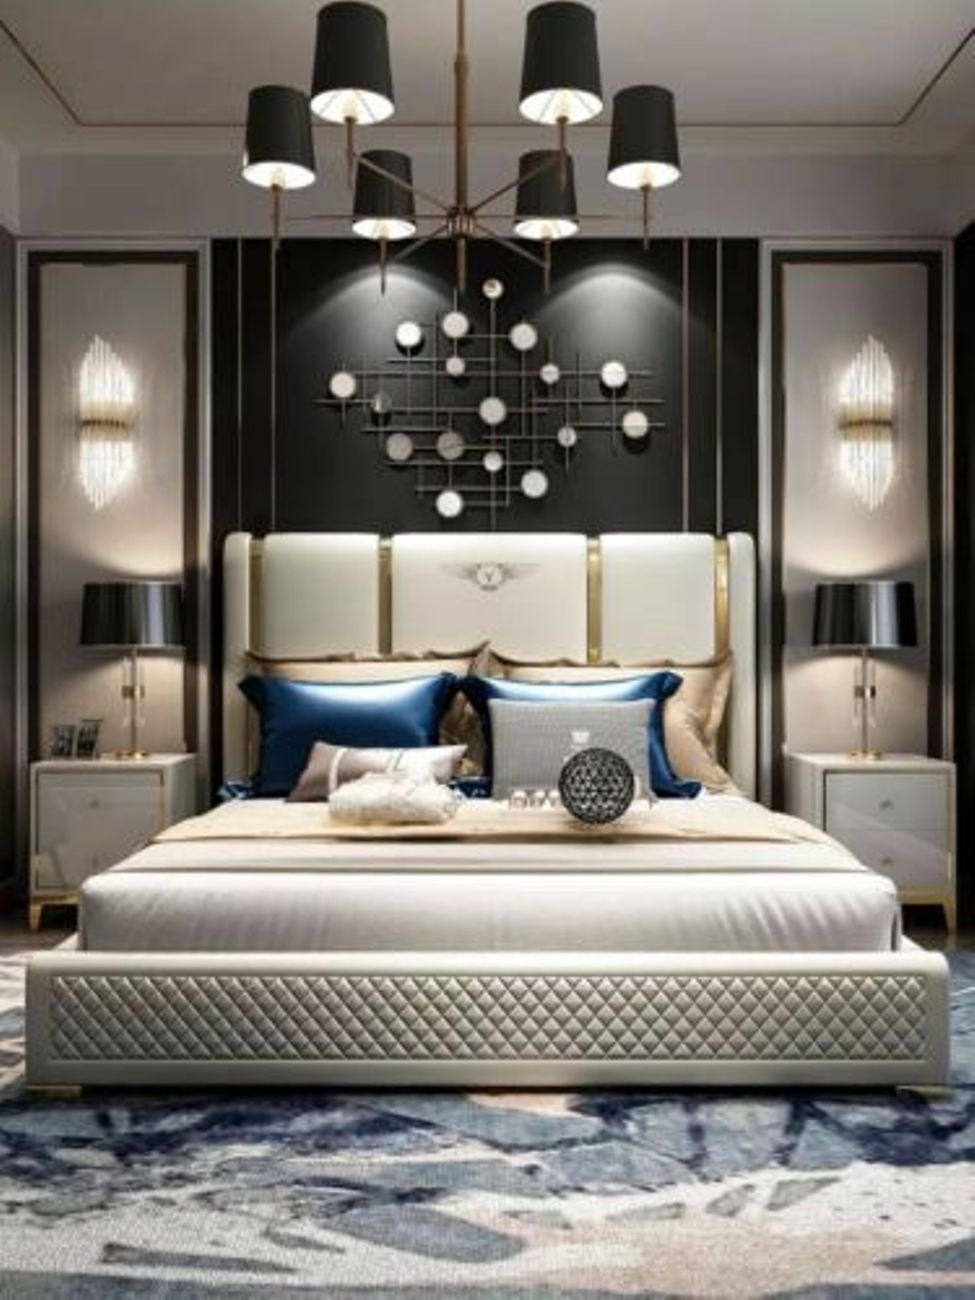 Ehe JVmoebel Polster Luxus Doppel Bett Design Hotel Zimmer Lederbett, Weiß Schlaf Leder Betten